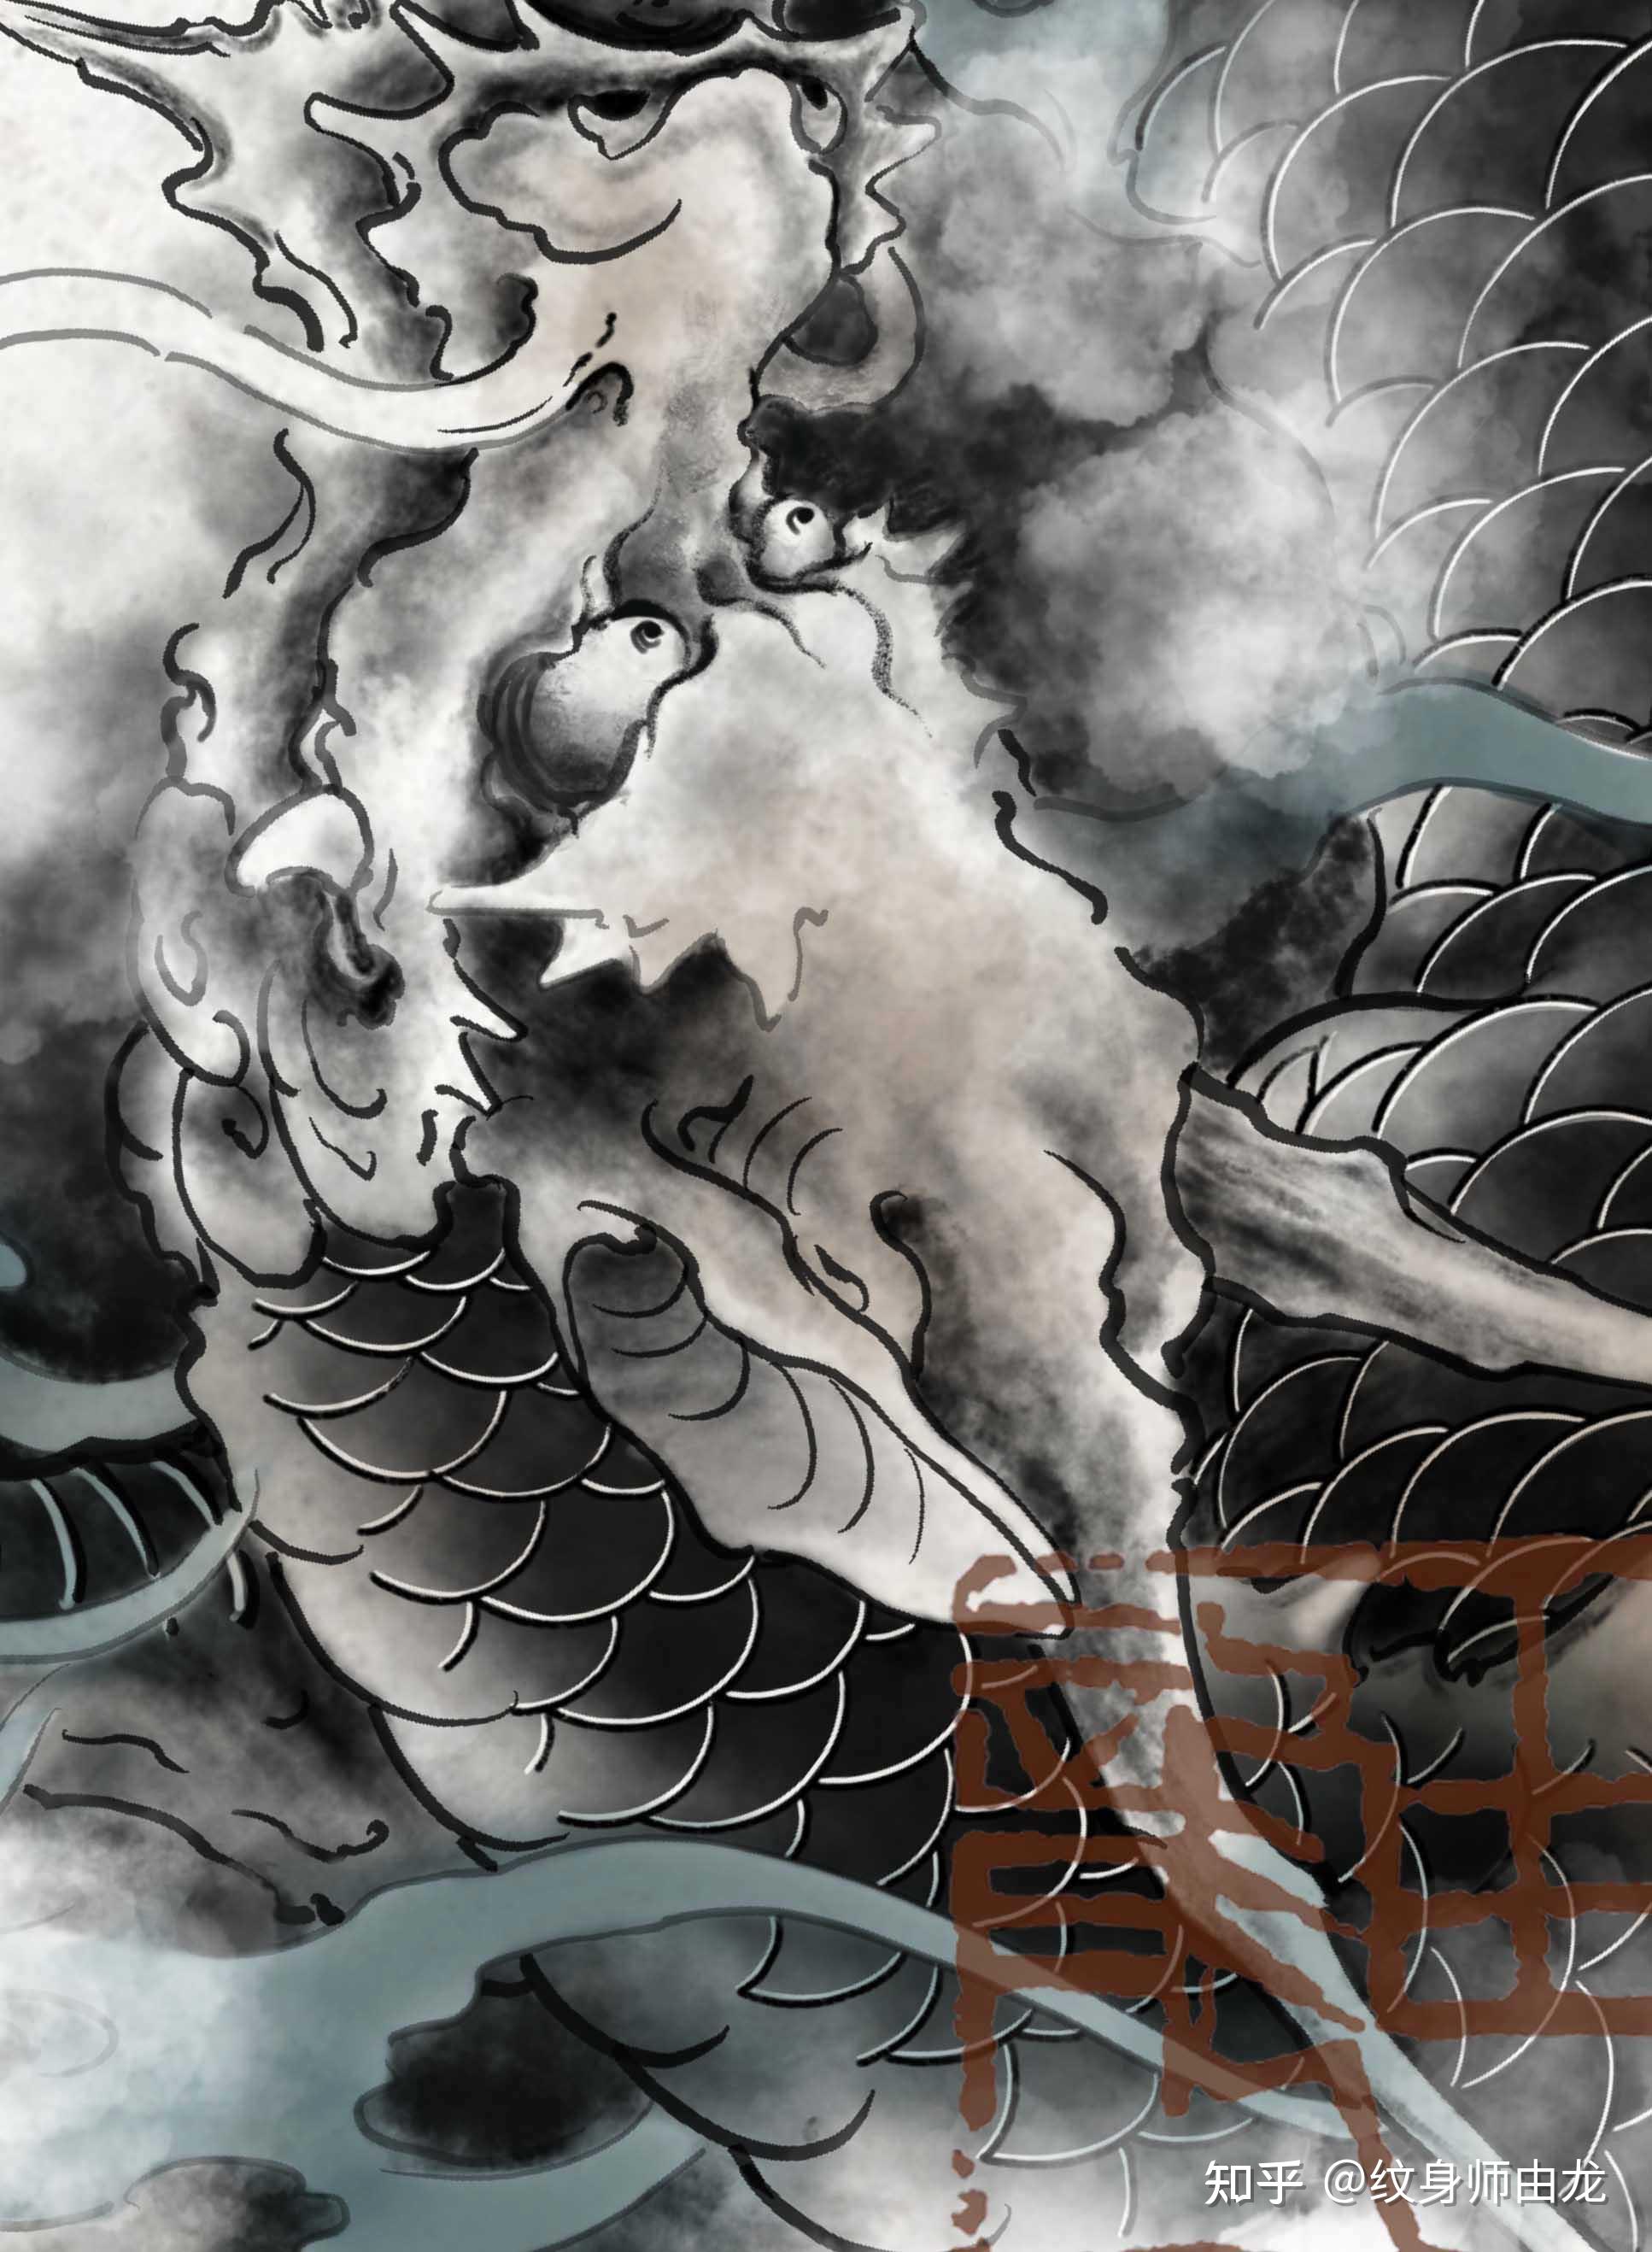 麒麟花臂纹身图案手稿设计_由龙手稿_上海由龙刺青